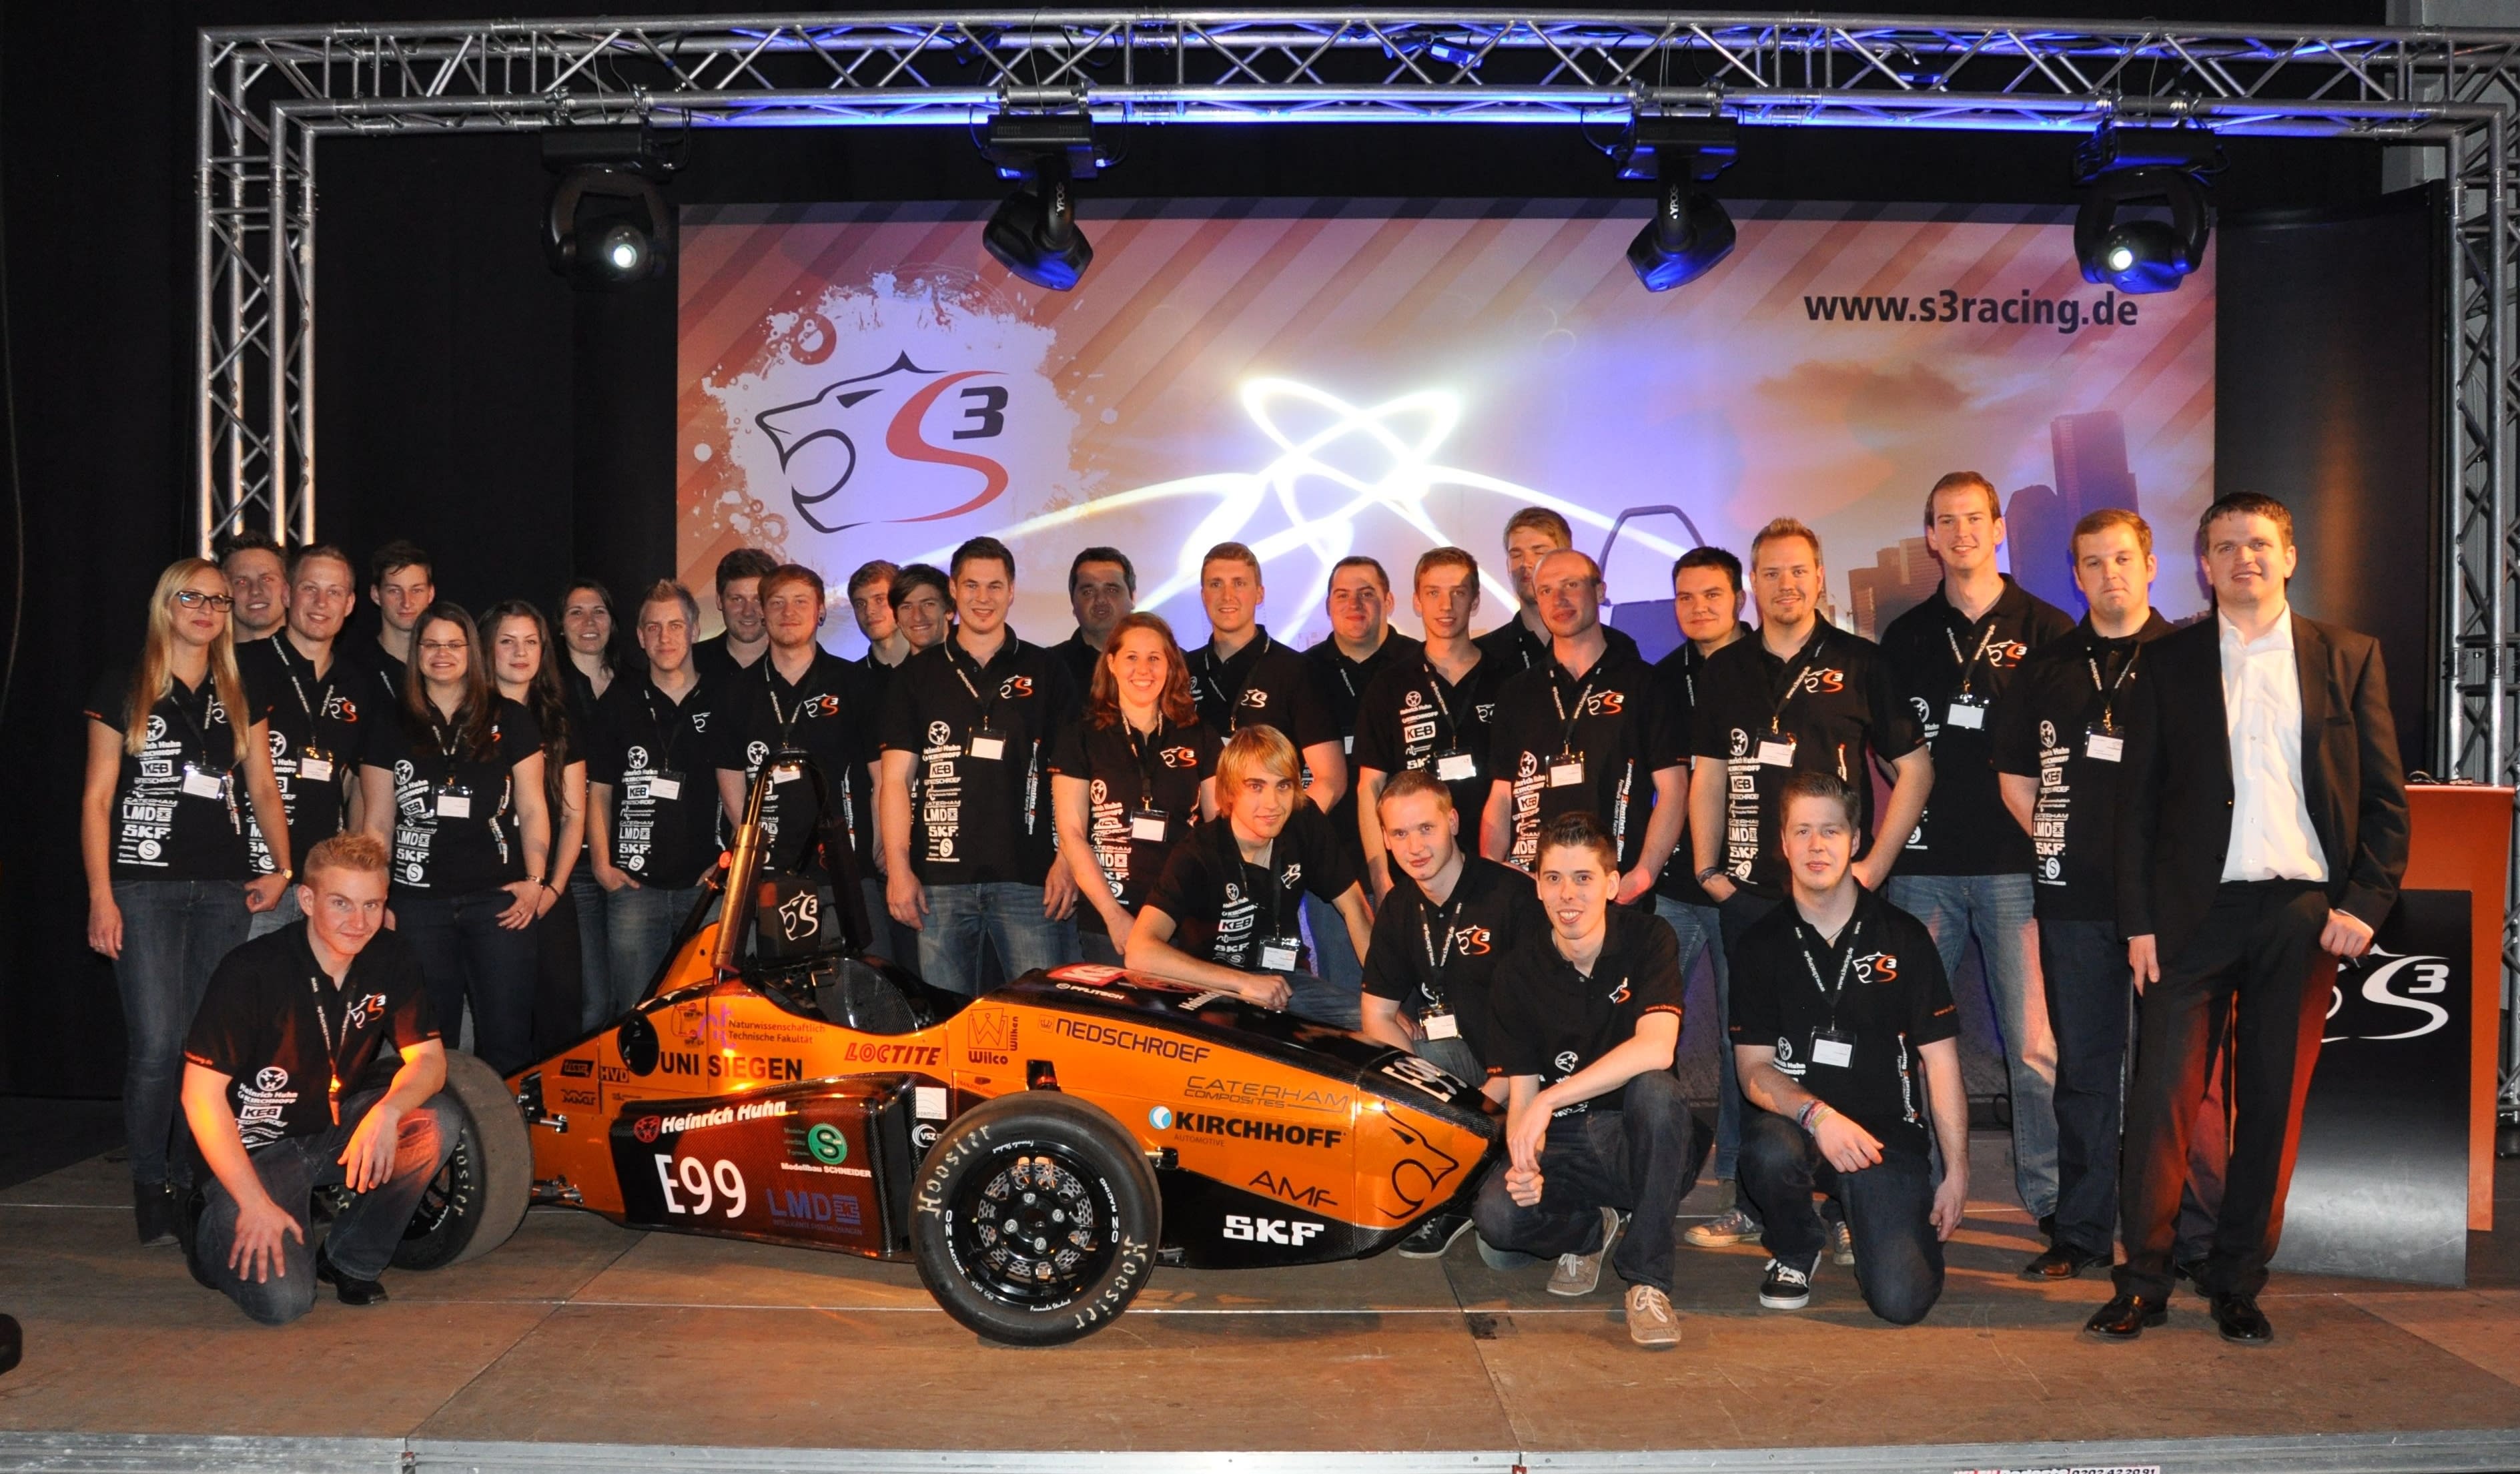 The team – Speeding Scientists Siegen